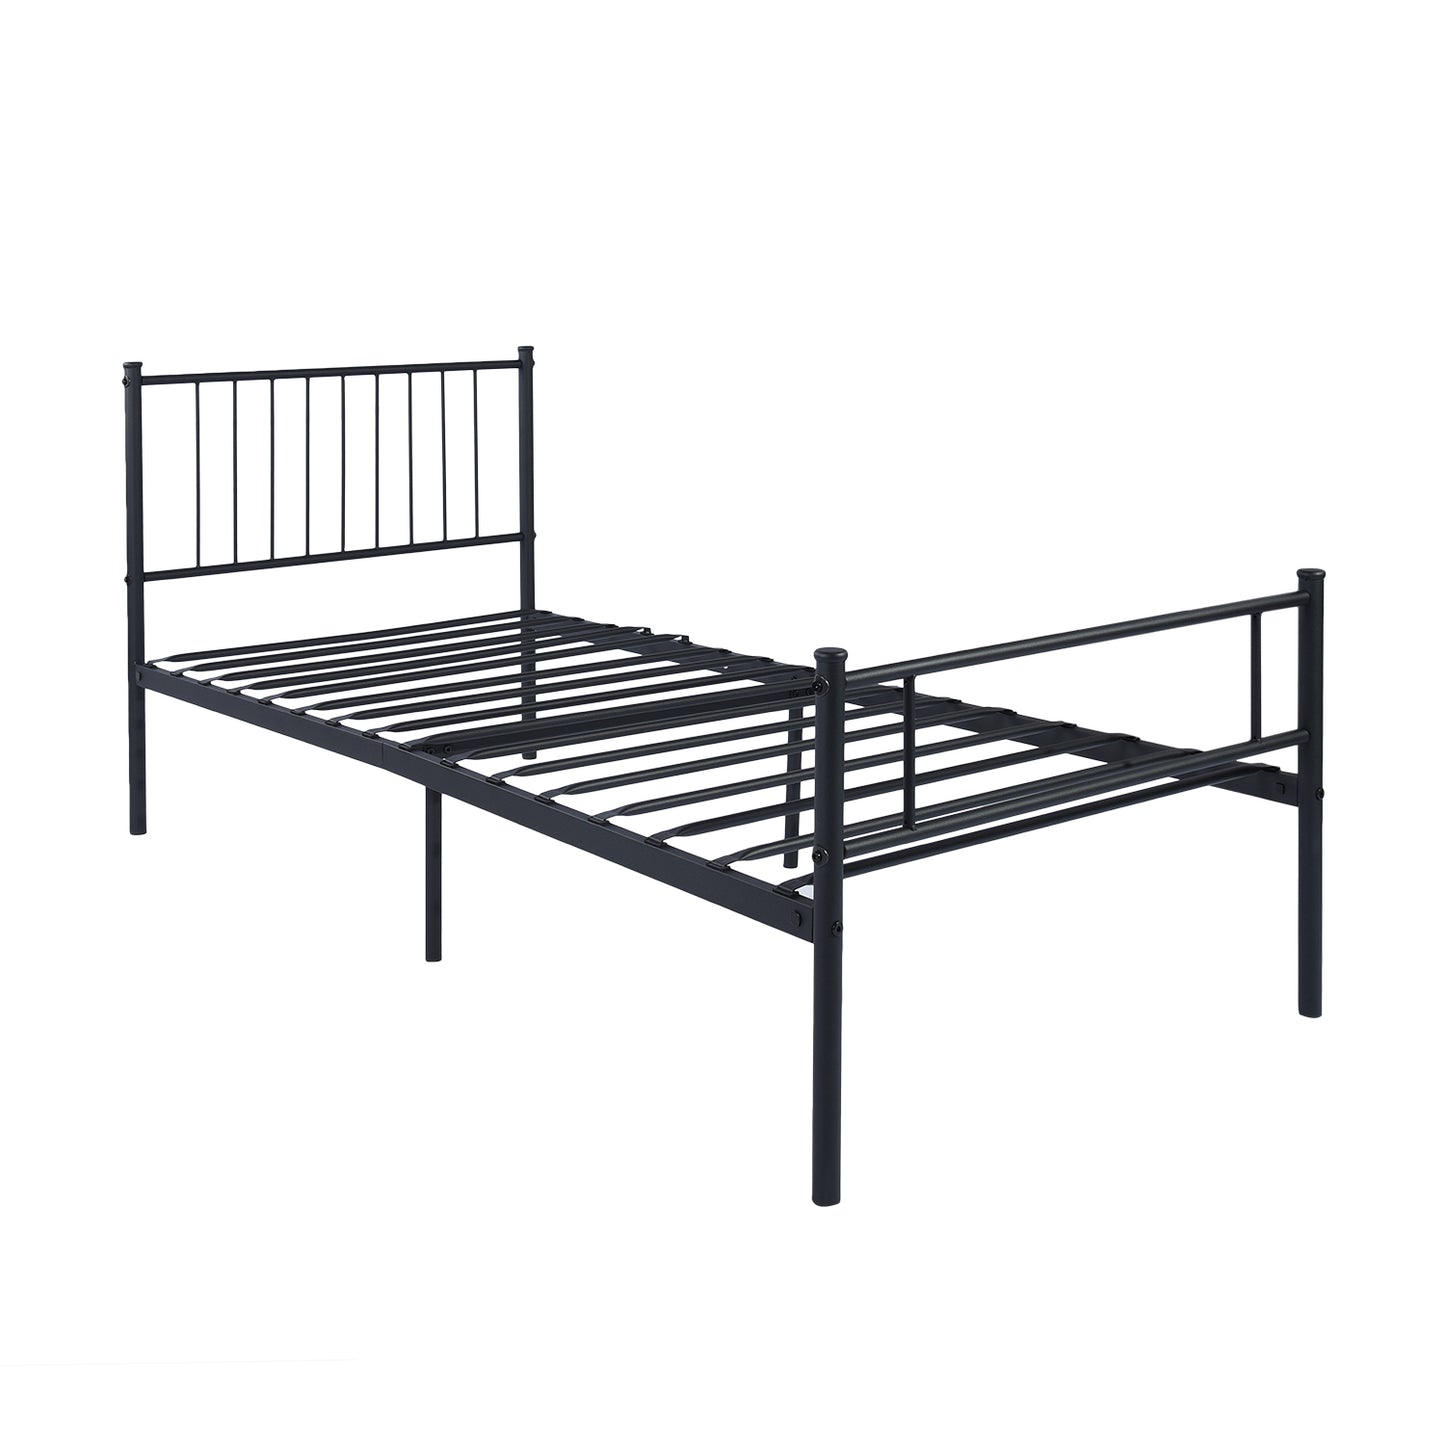 KESSIE Single/Double Metal Bed 123 * 196 cm - Black